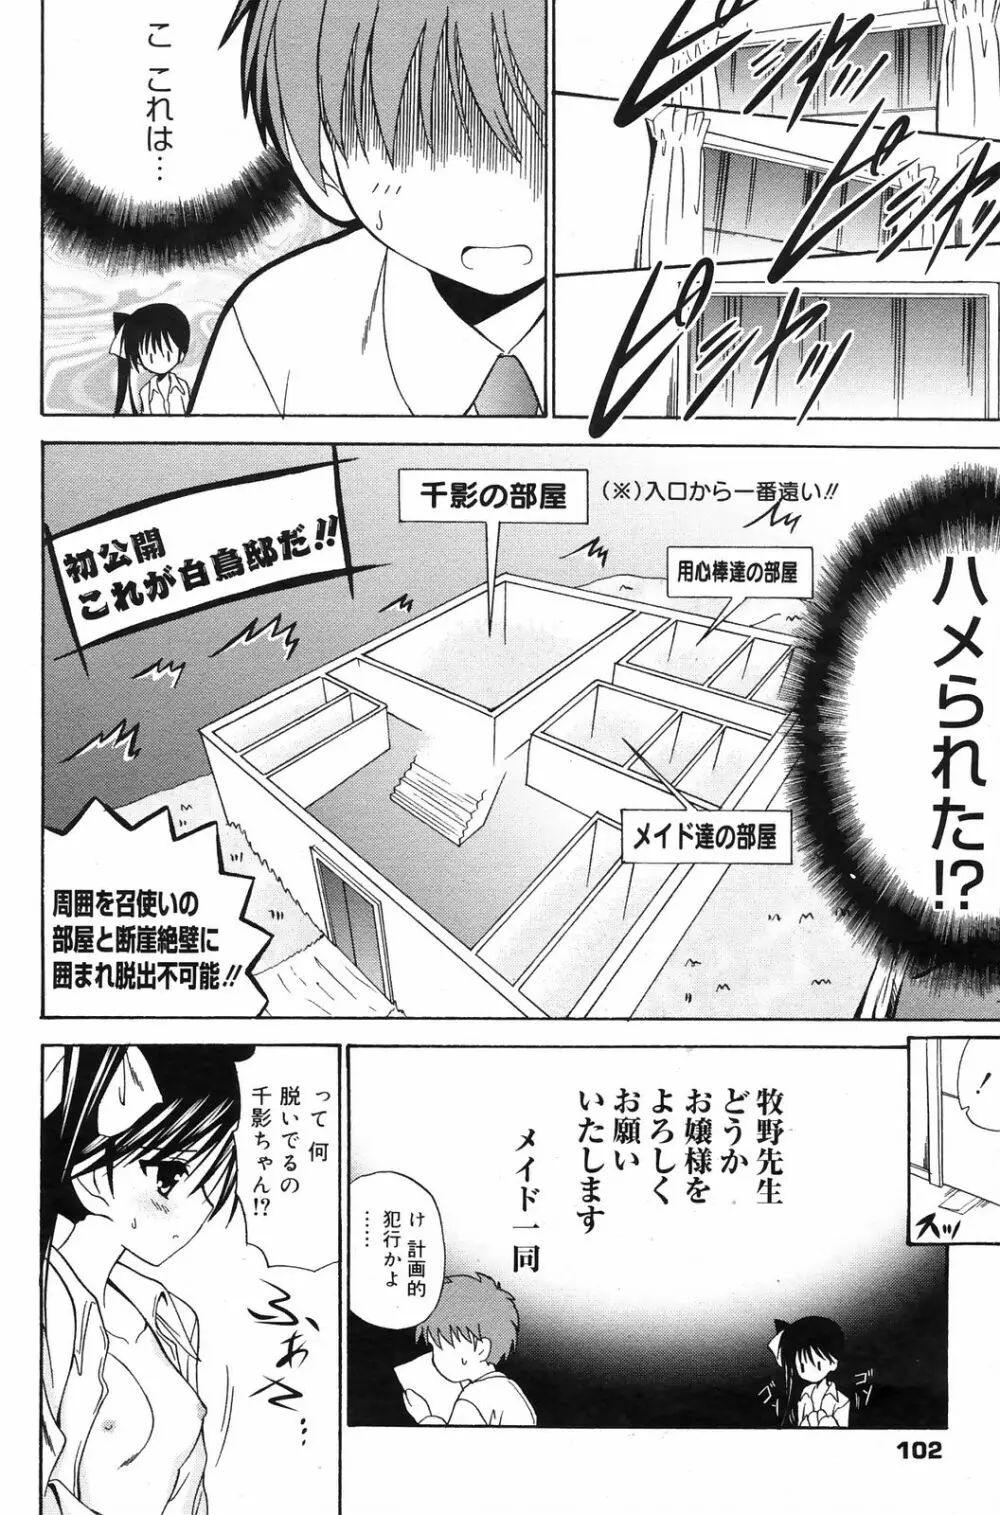 Manga Bangaichi 2009-01 102ページ